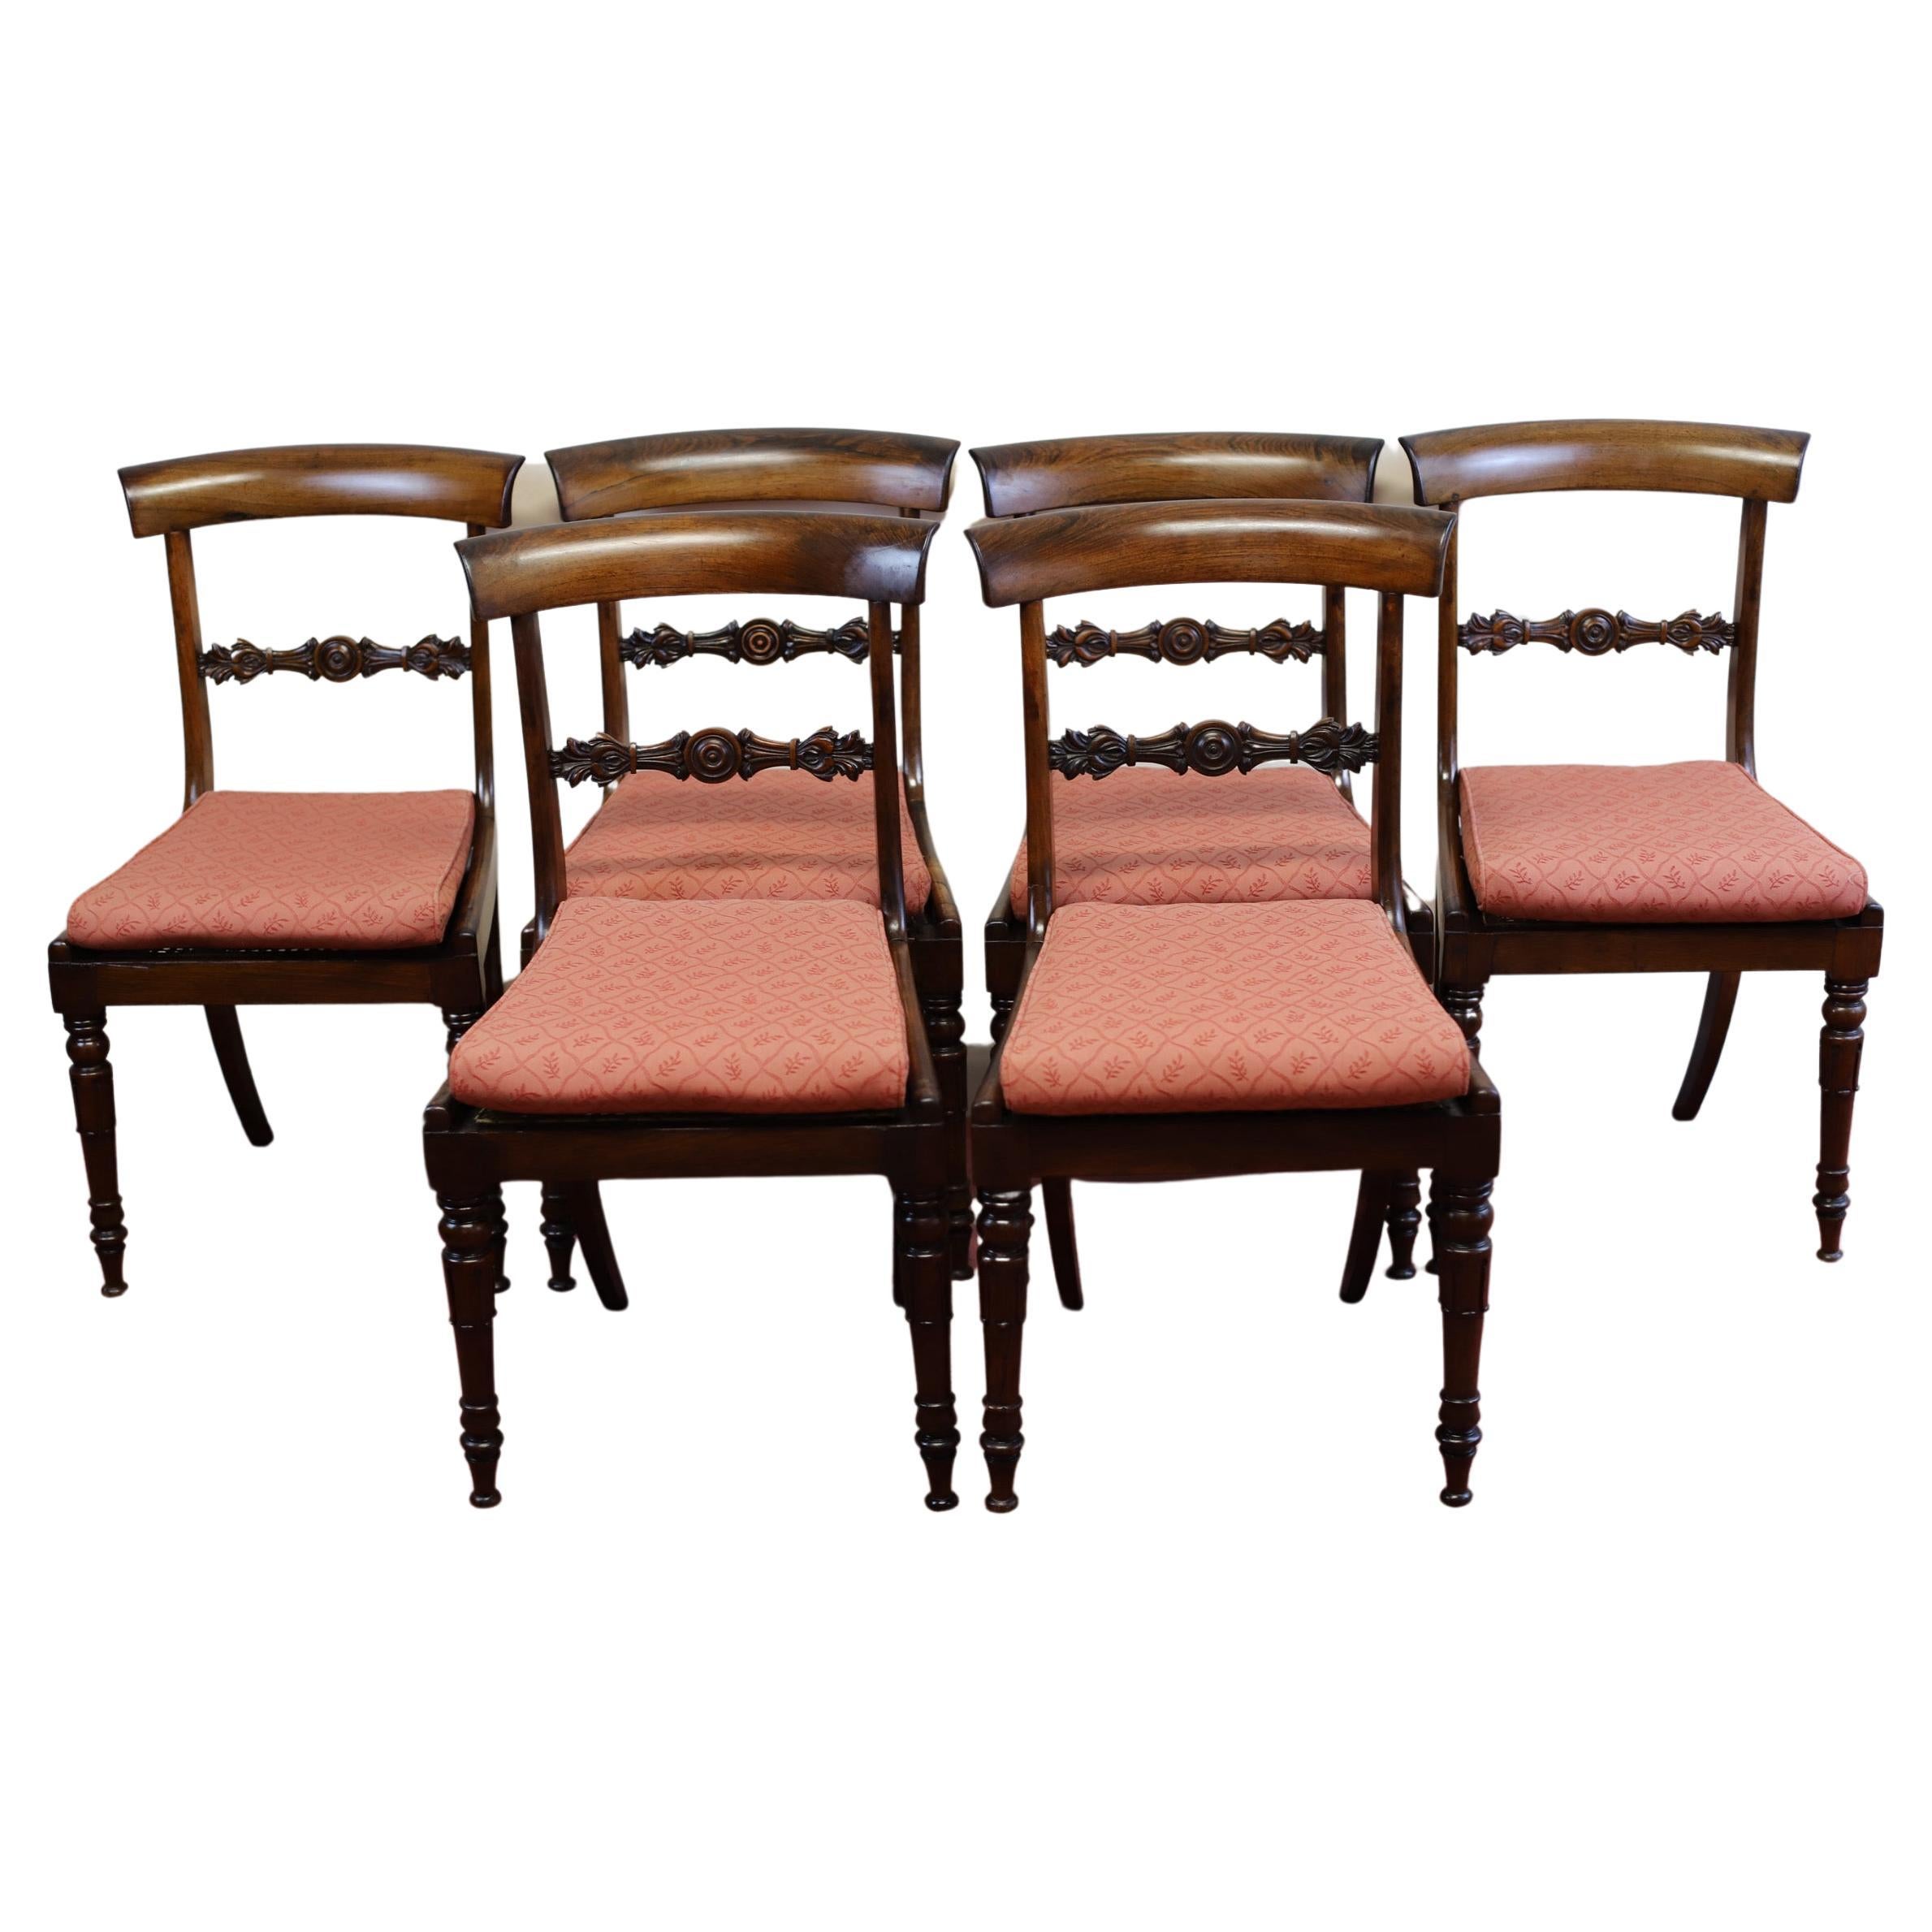 Wir freuen uns, diese erstaunliche Reihe von sechs William IV Palisander Sitz Esszimmerstühle zum Verkauf anbieten, mit Squab Kissen Sitze und stehen auf geriffelten spitz zulaufenden Beinen auf der Vorderseite und nach hinten geschwungenen